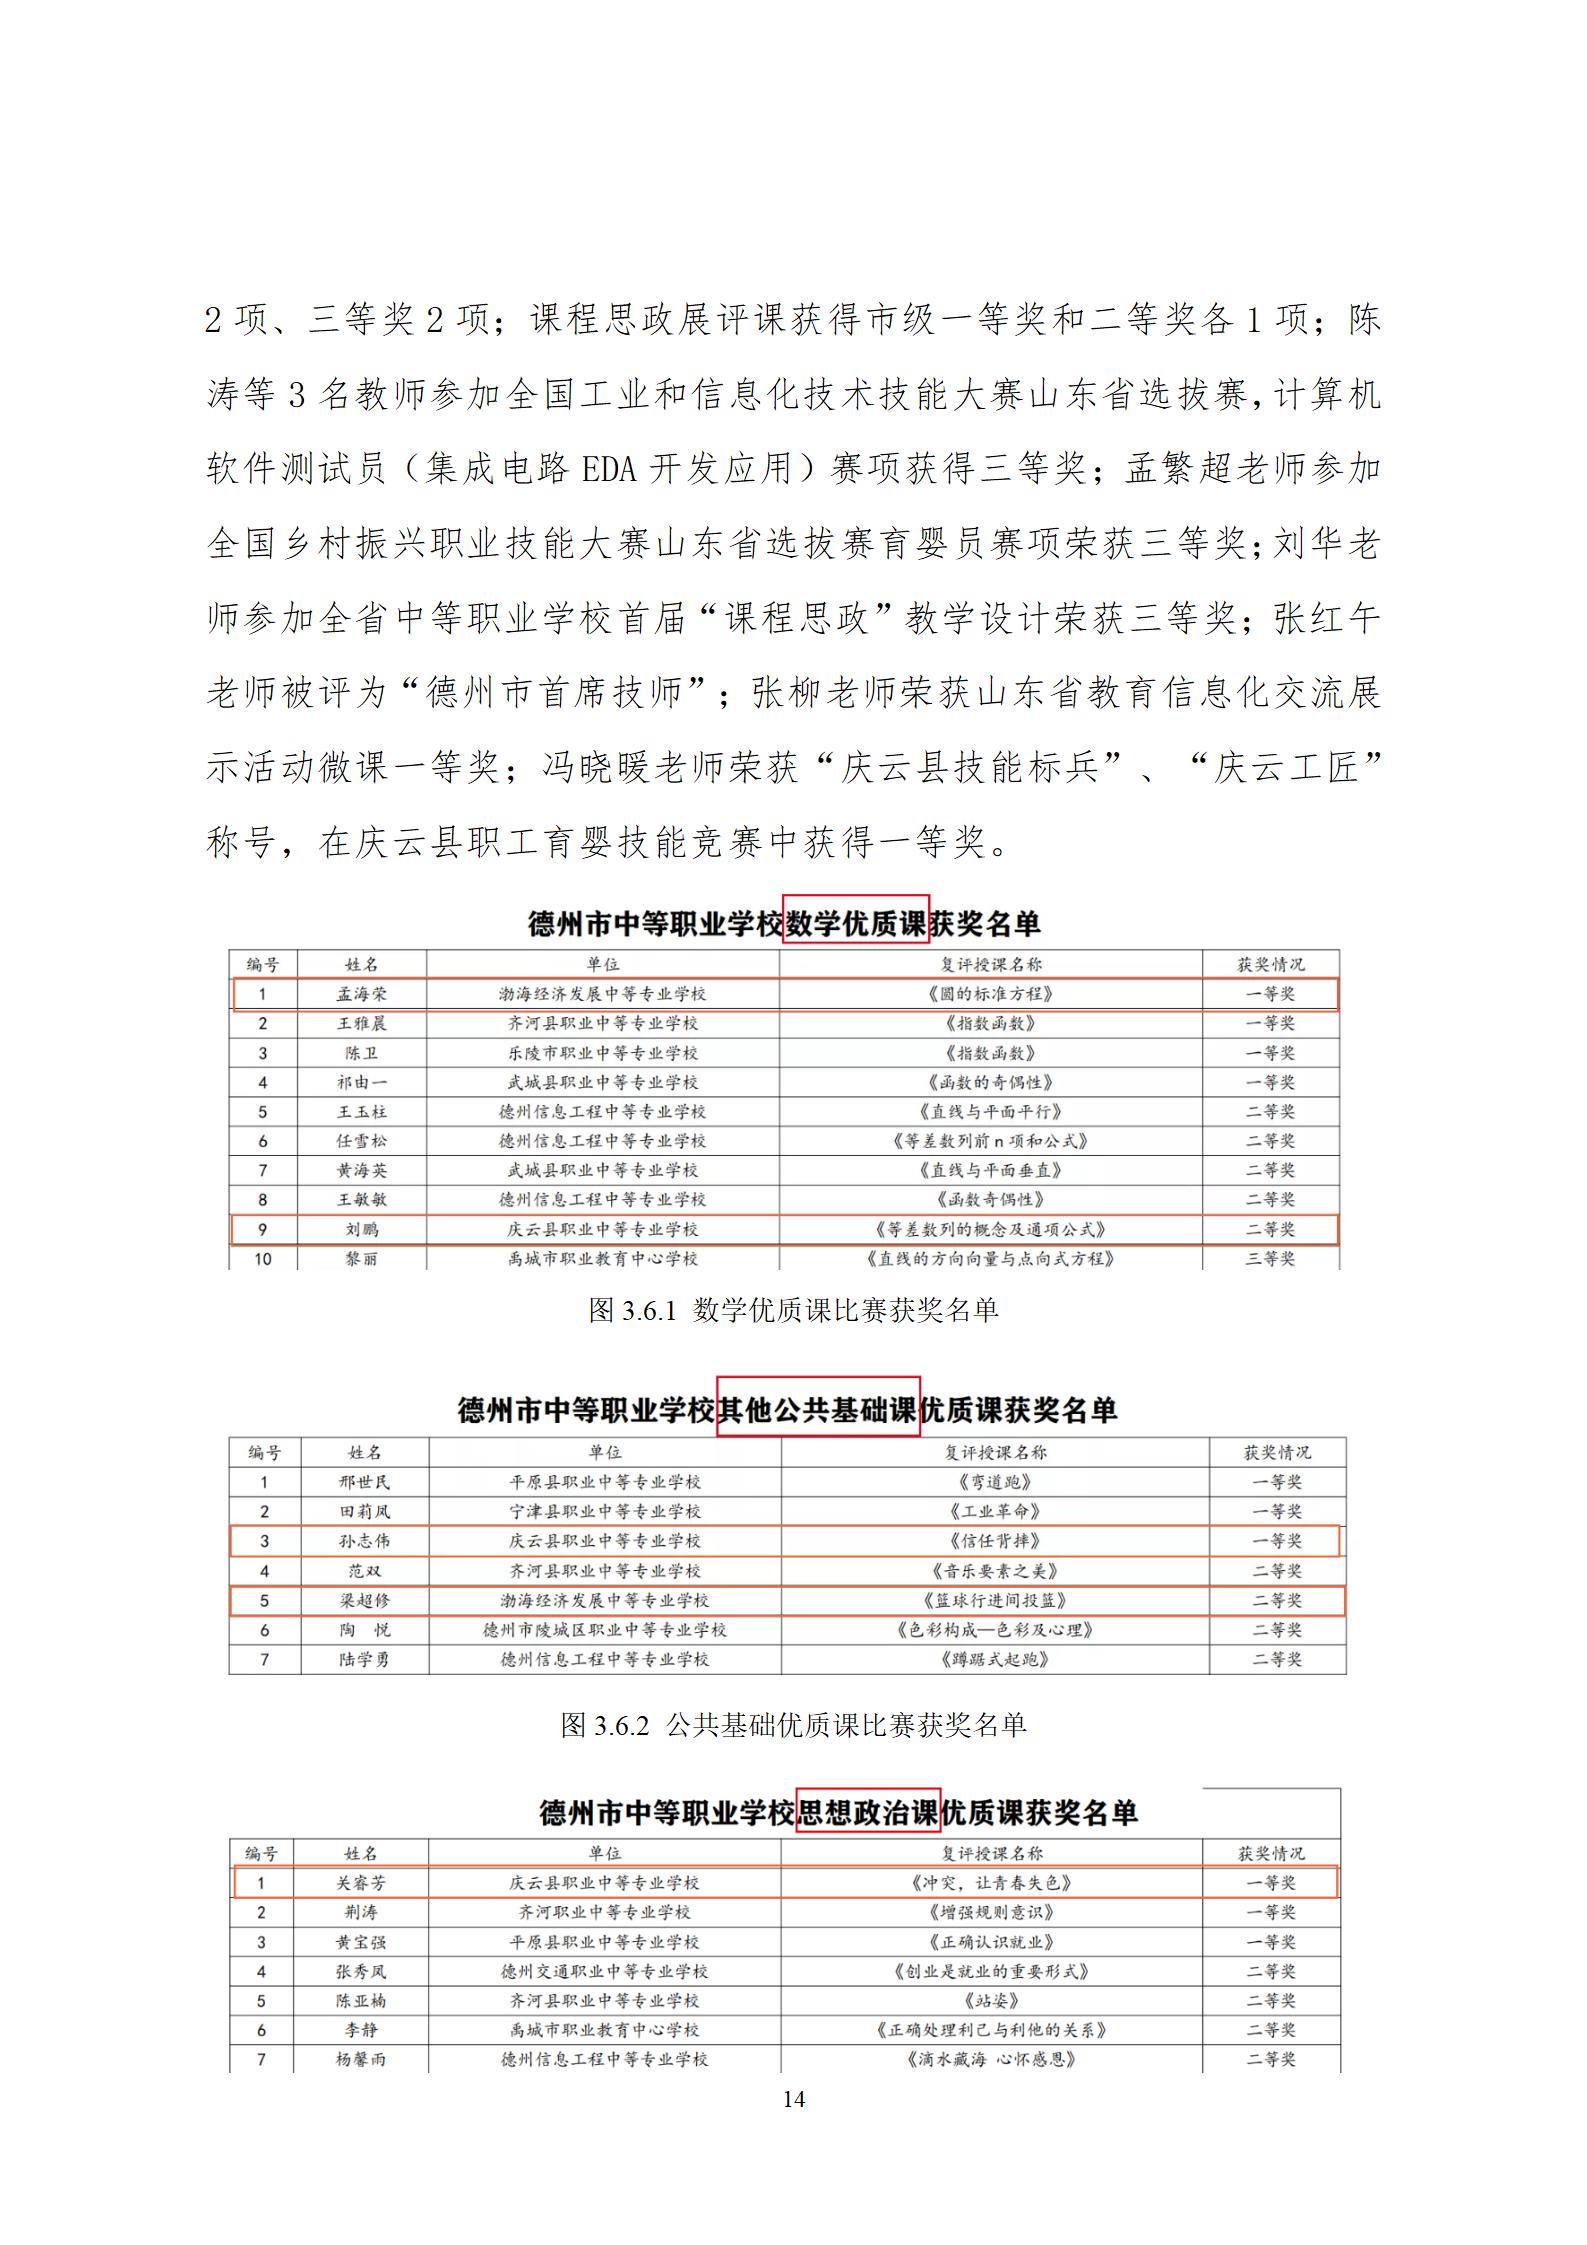 2022年渤海经济发展中等专业学校年度质量报告(1)_18.jpg